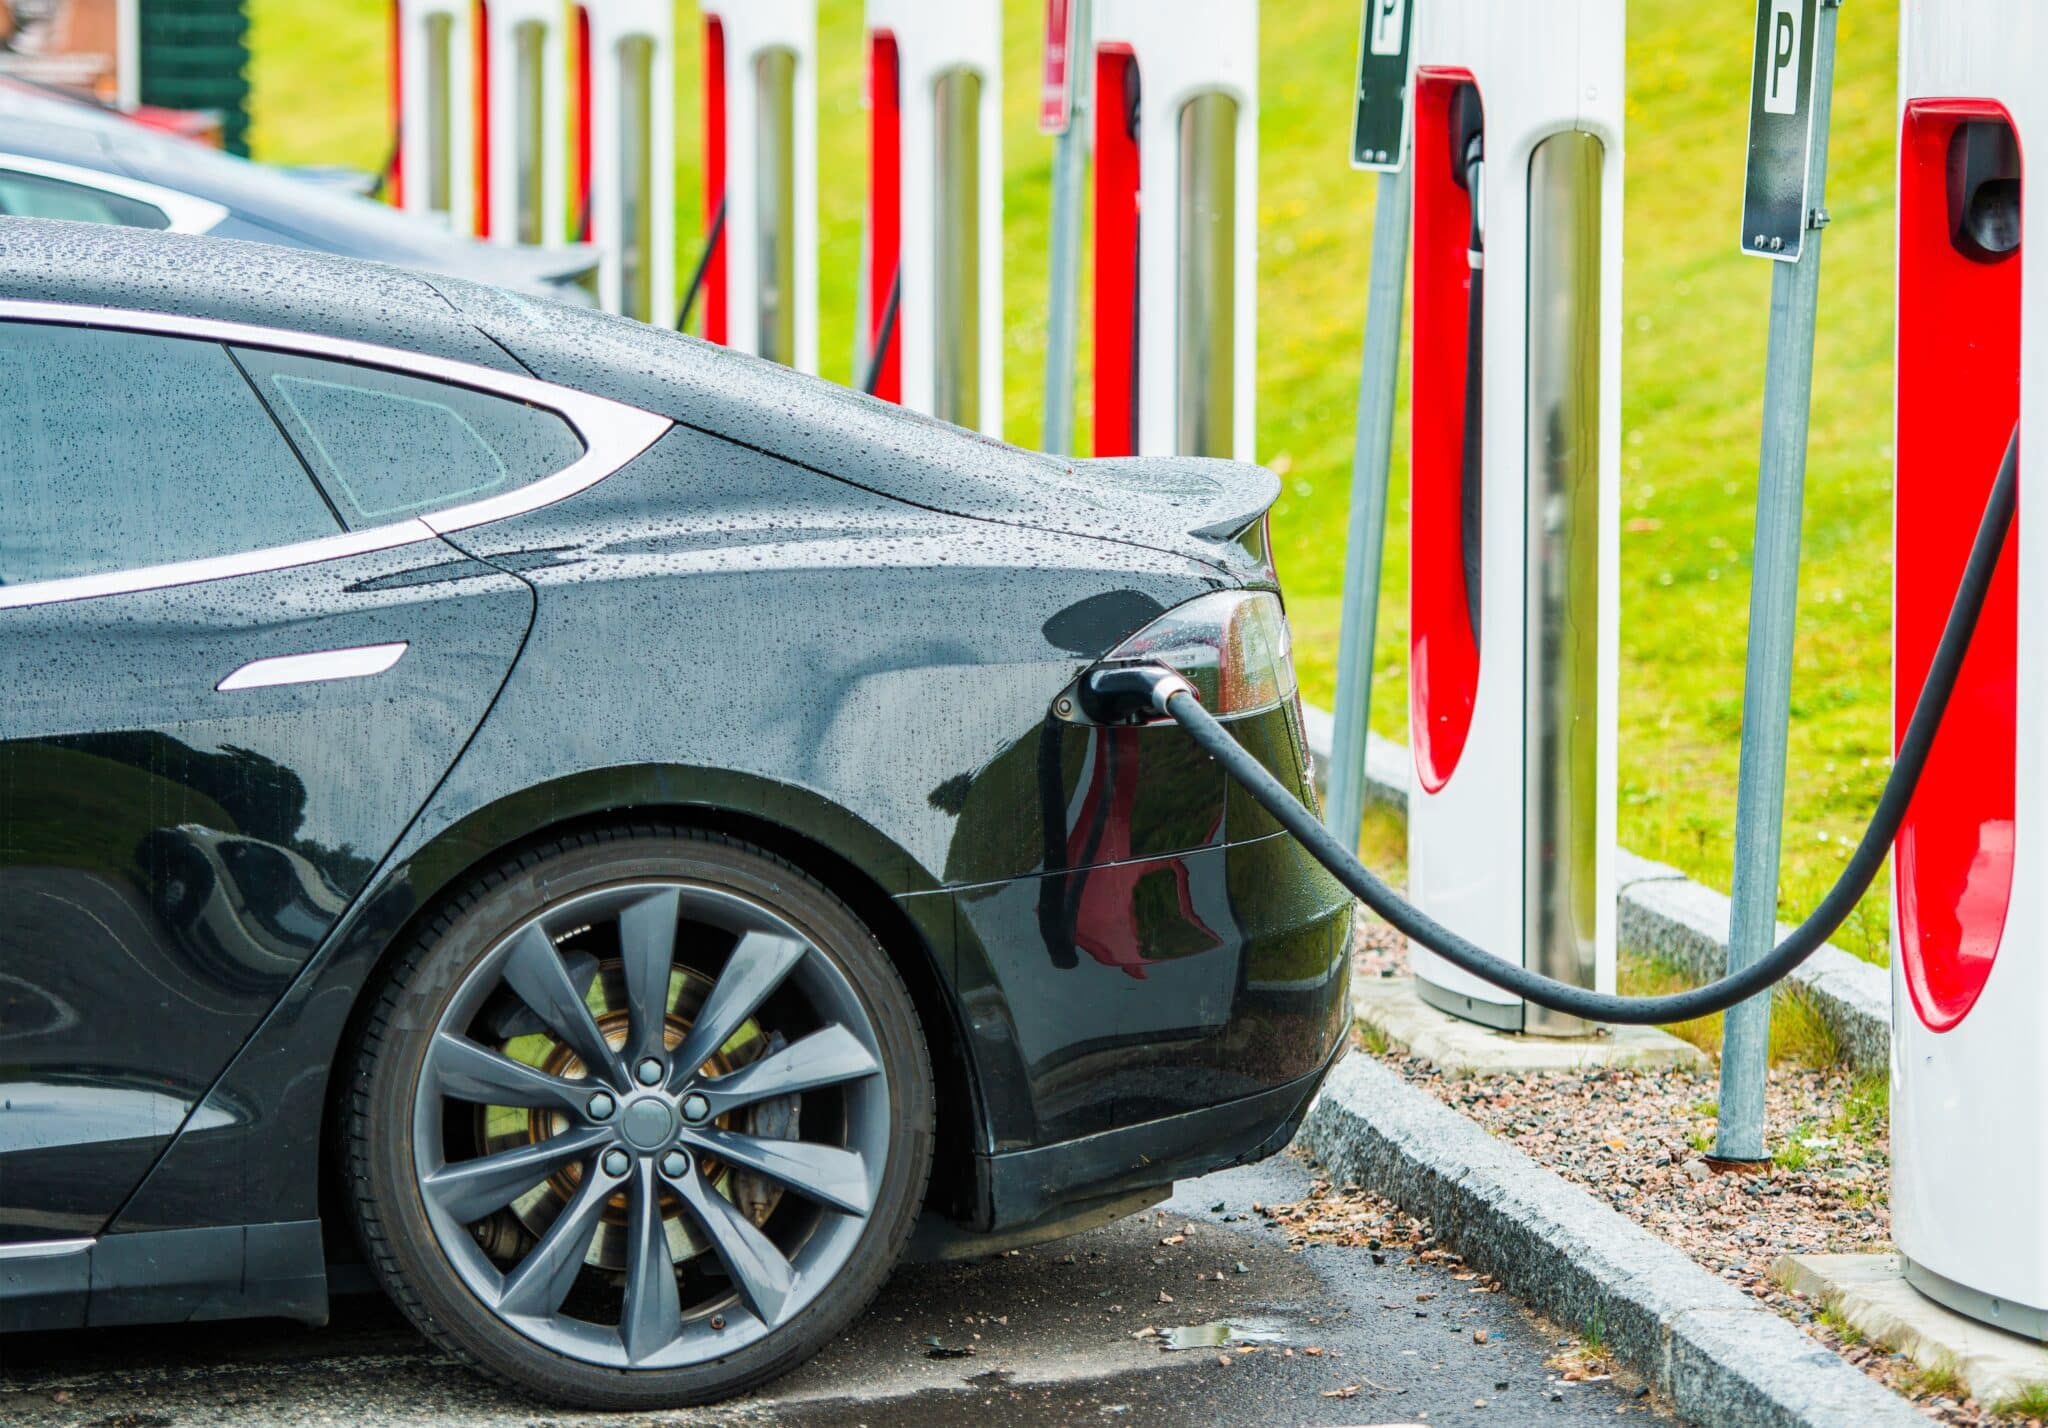 Batteria auto elettrica: magnesio più sicuro e densità energetica maggiore rispetto al litio? Pubblicata una ricerca